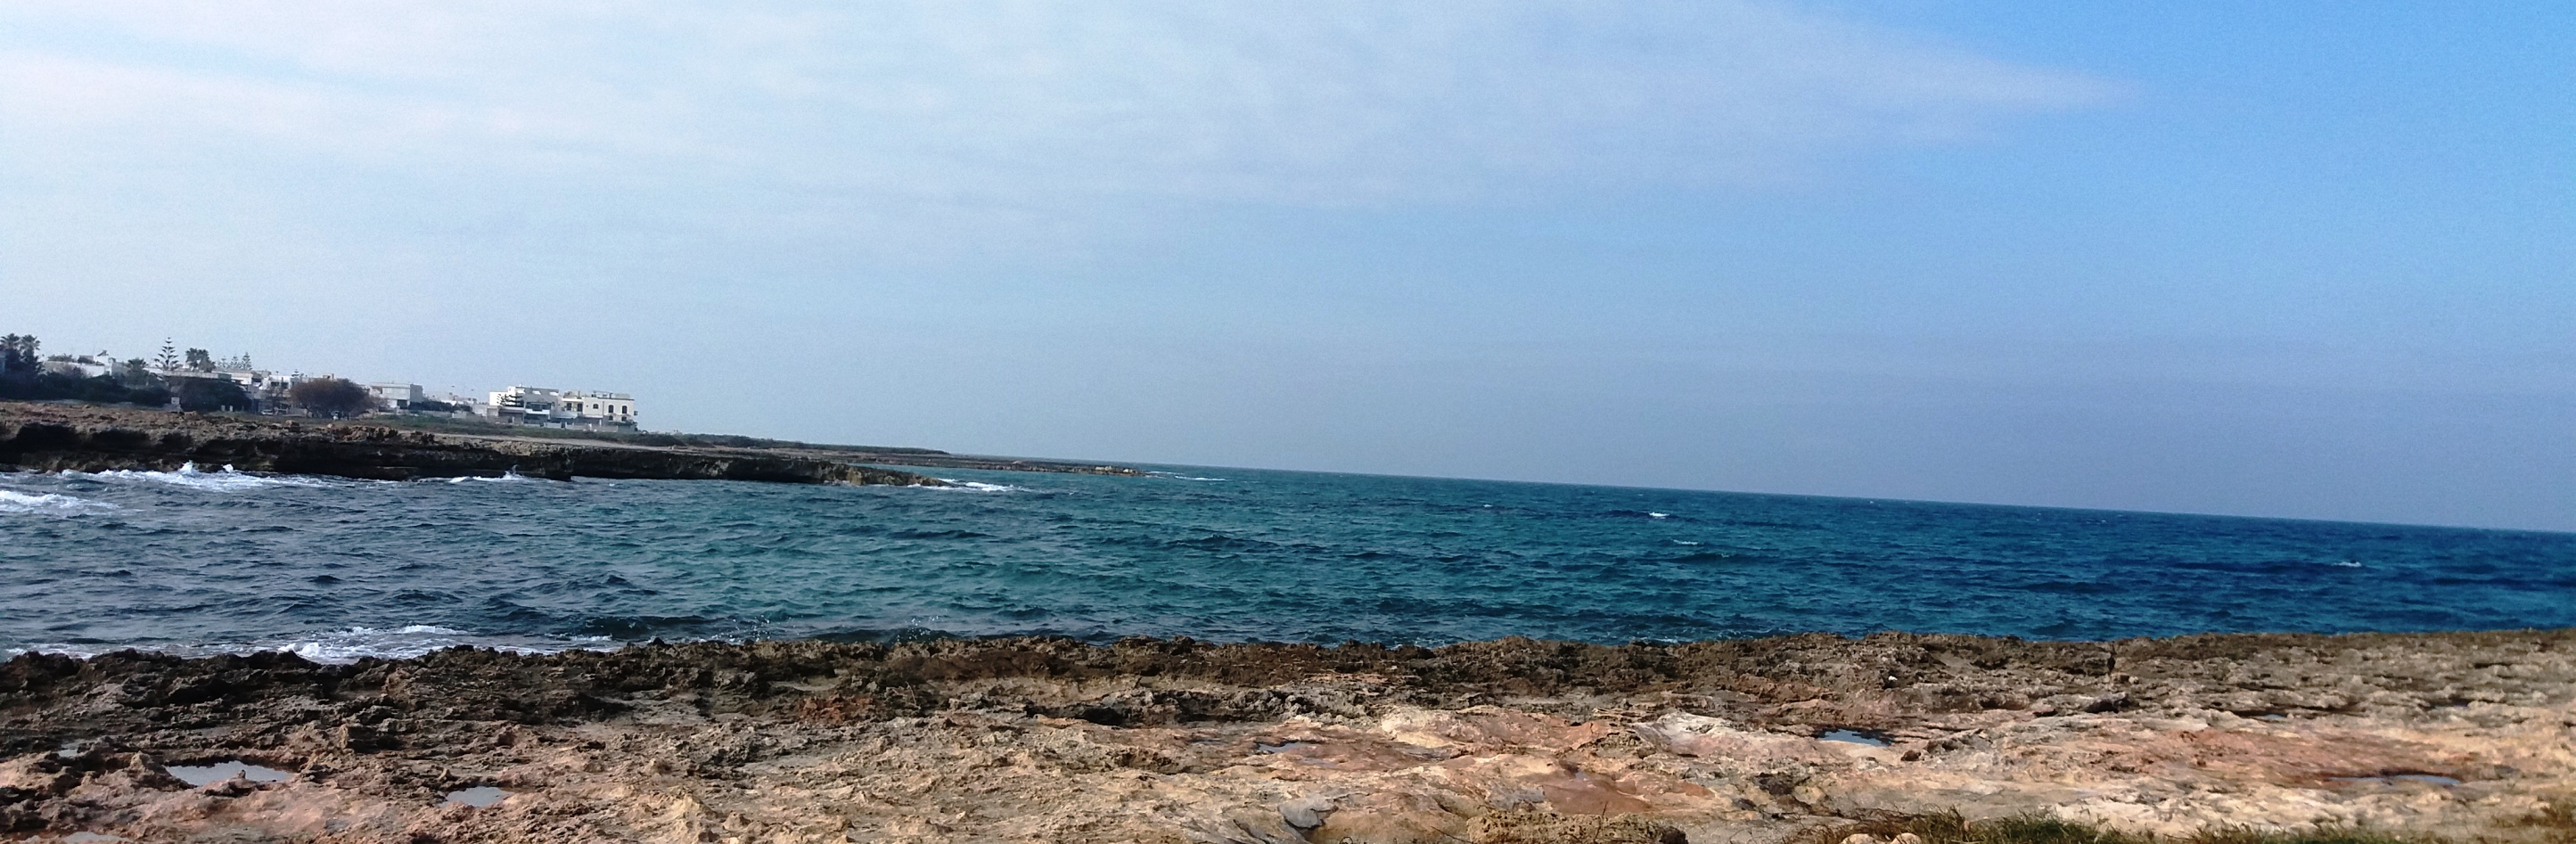 Mare Spiagge di Ostuni Salento Puglia